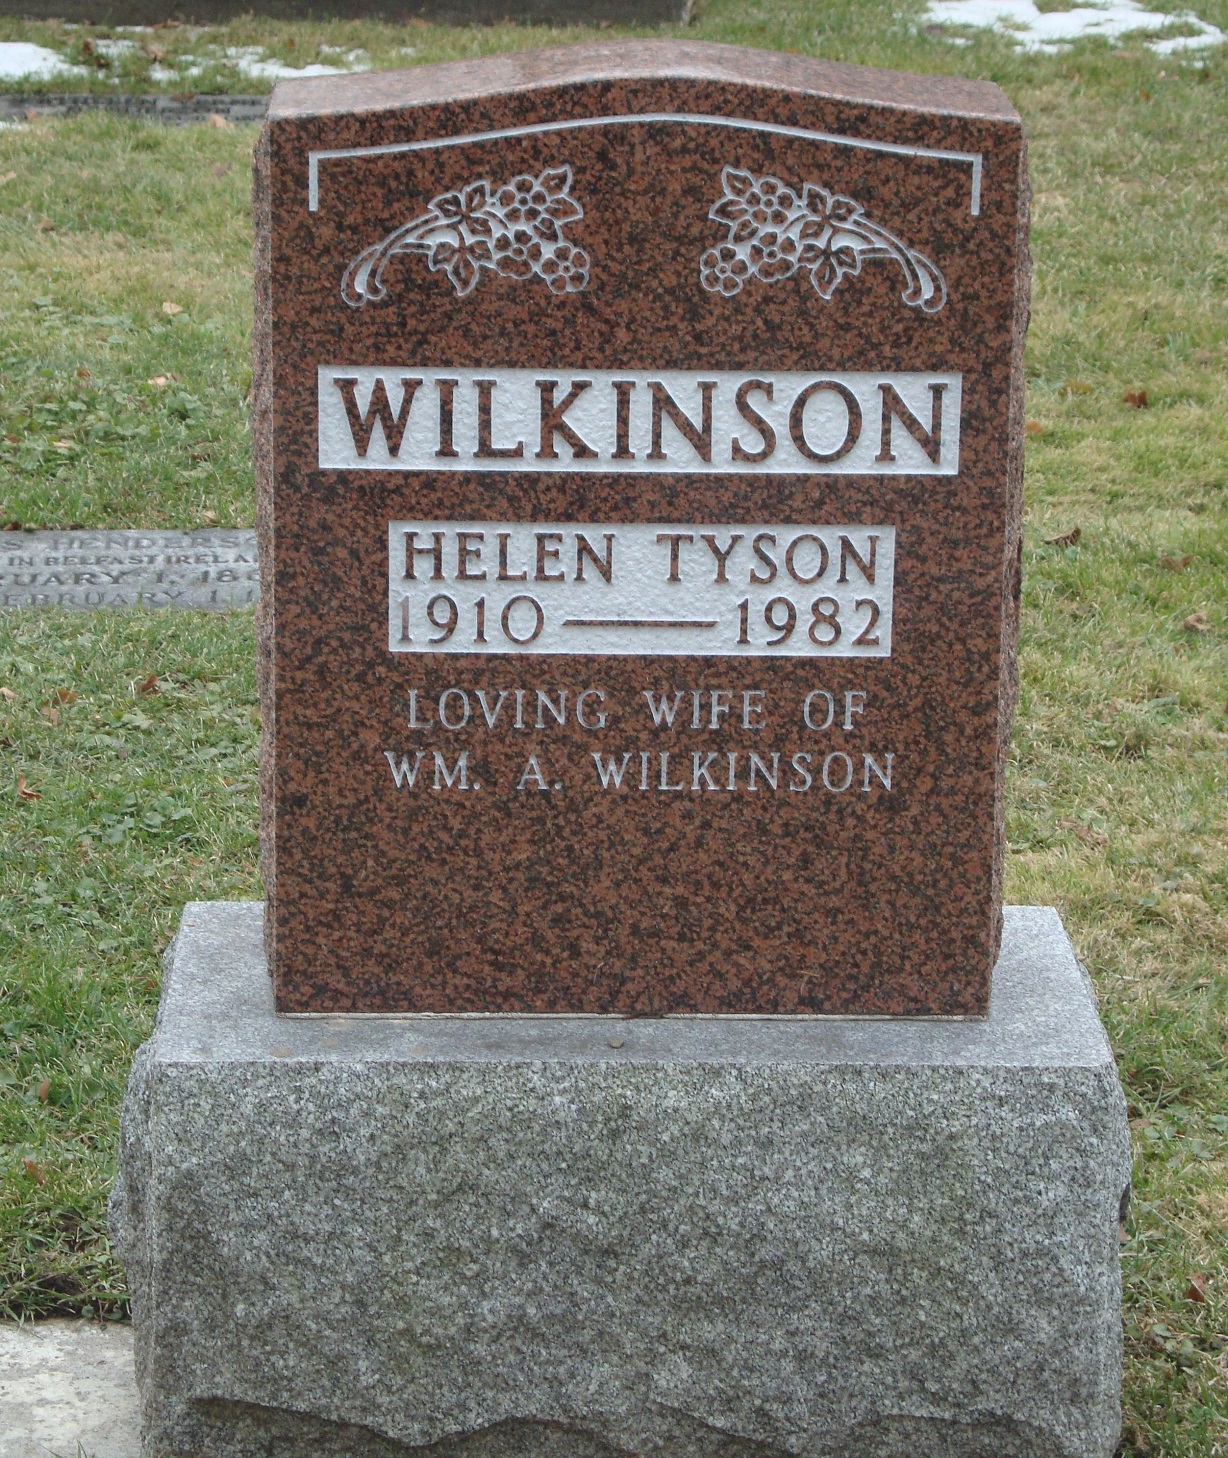 Helen Tyson Wilkinson 1910-1985 spouse Wm A. Wilkinson